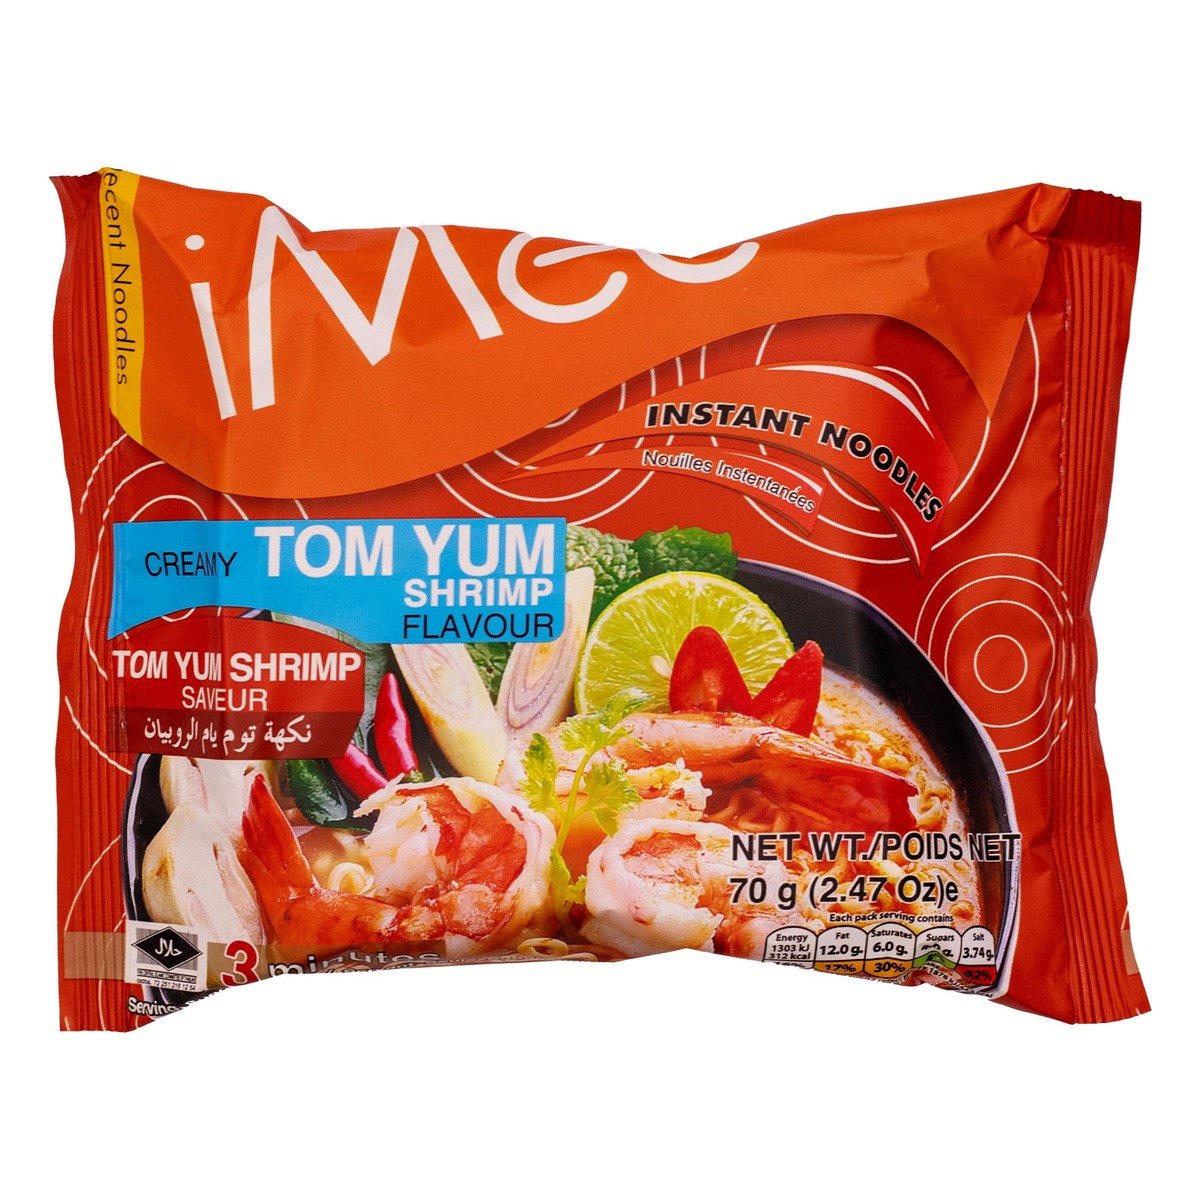 Imee Tom Yum Shrimp Flavour Instant Noodles 70 g